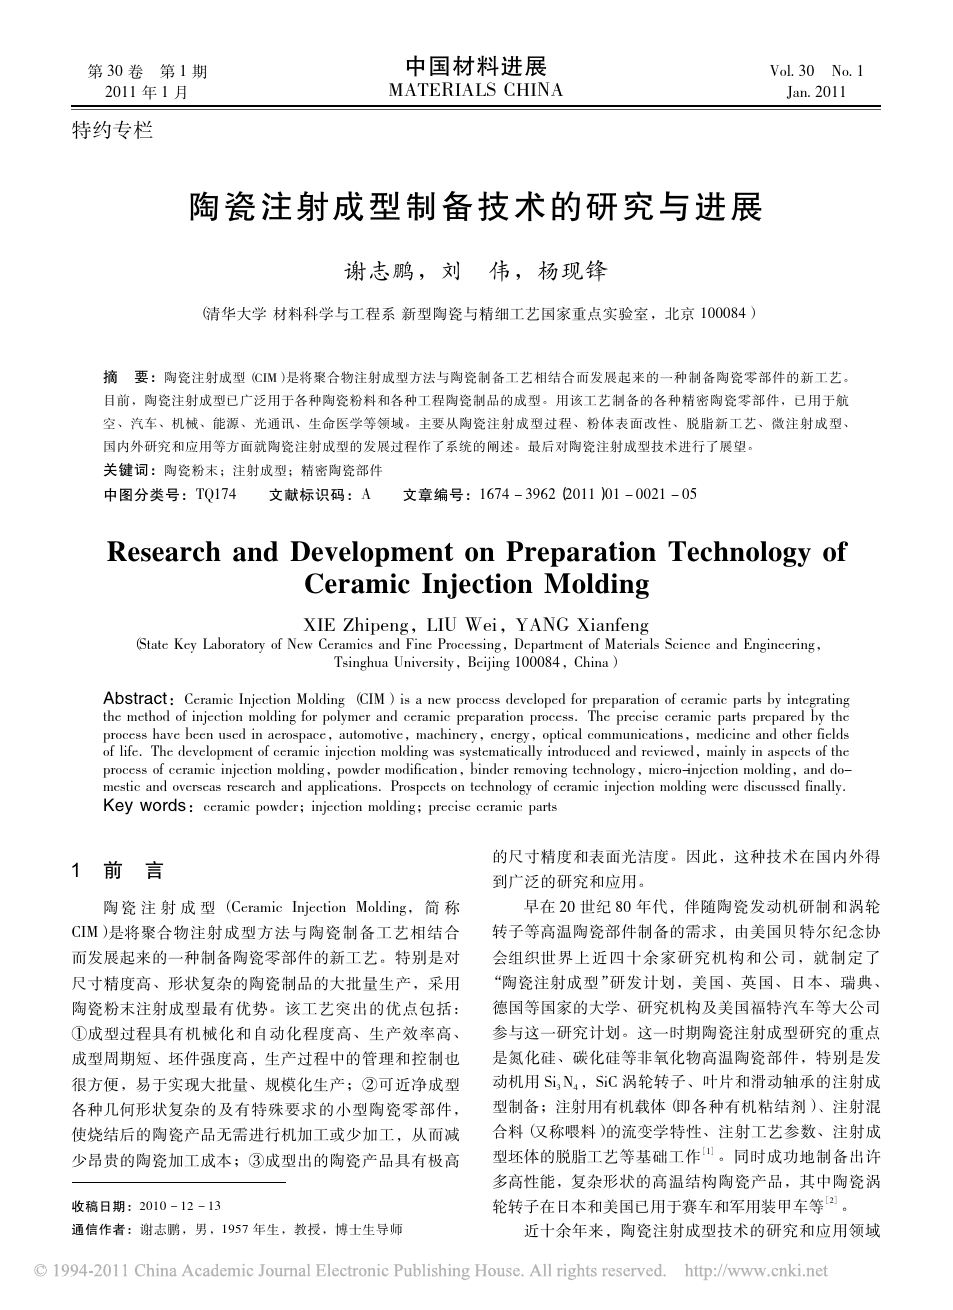 清华大学-谢志鹏-陶瓷注射成型制备技术的研究与进展